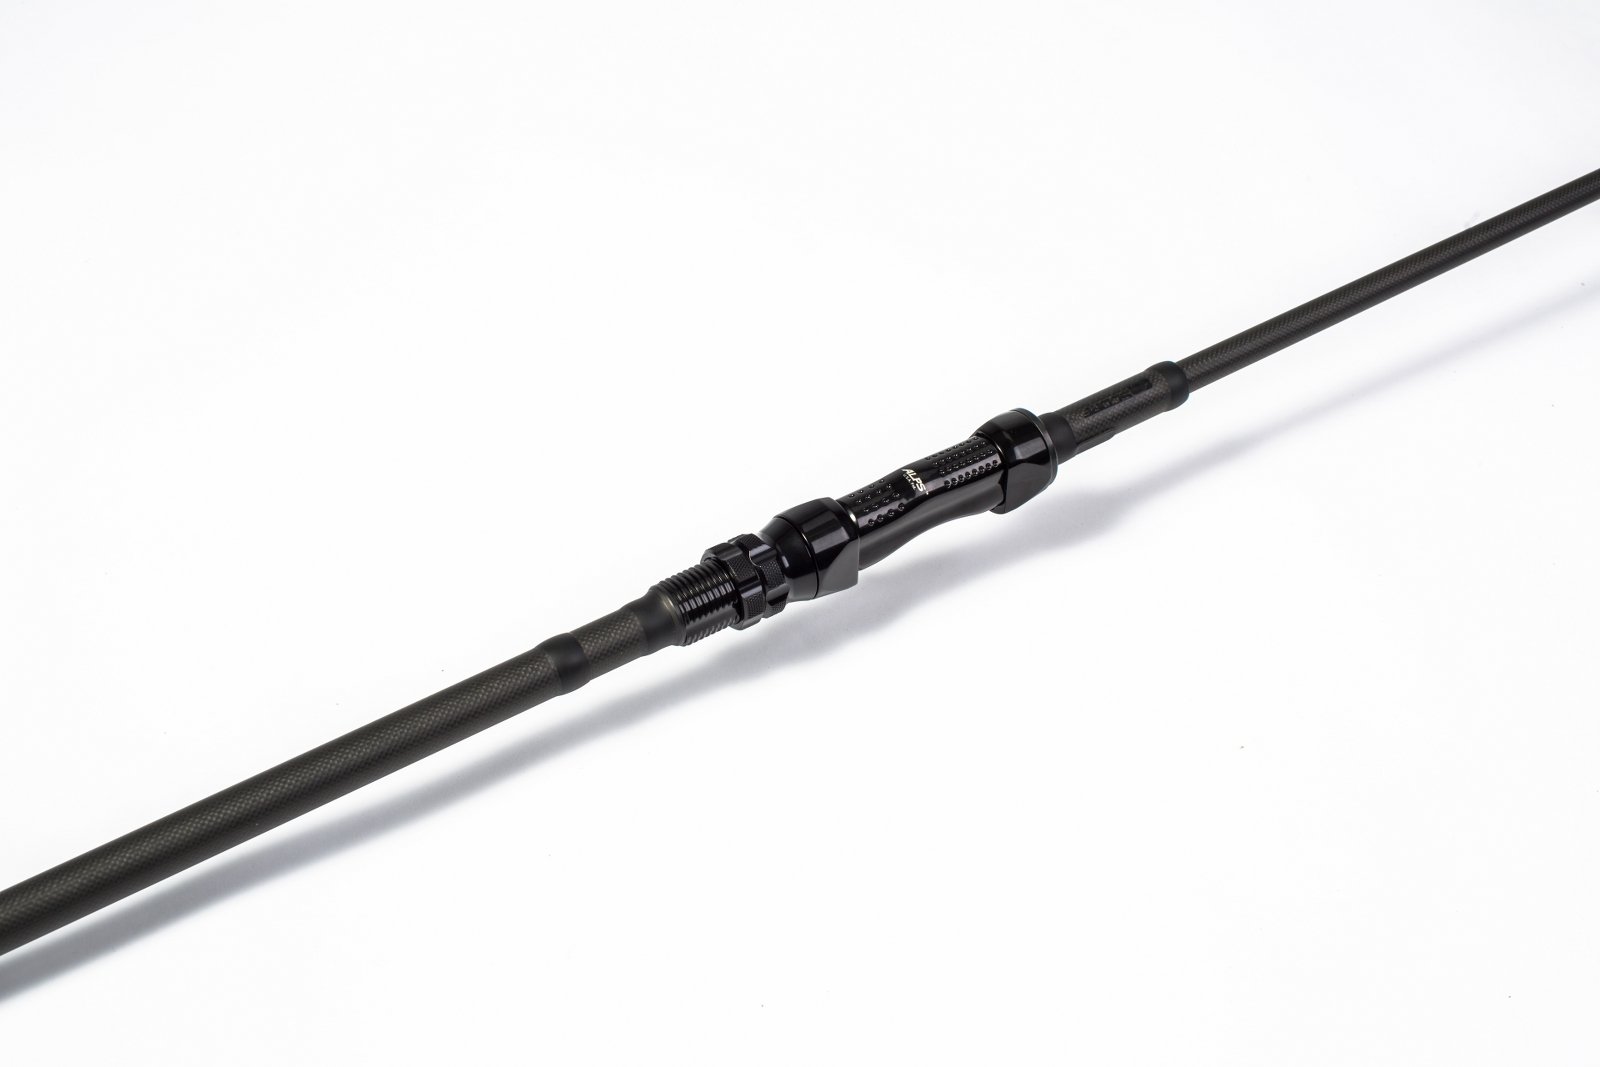 Nash Scope Black Ops 9ft 3lb Scope Rods Tackle T1722 International Shop Europe